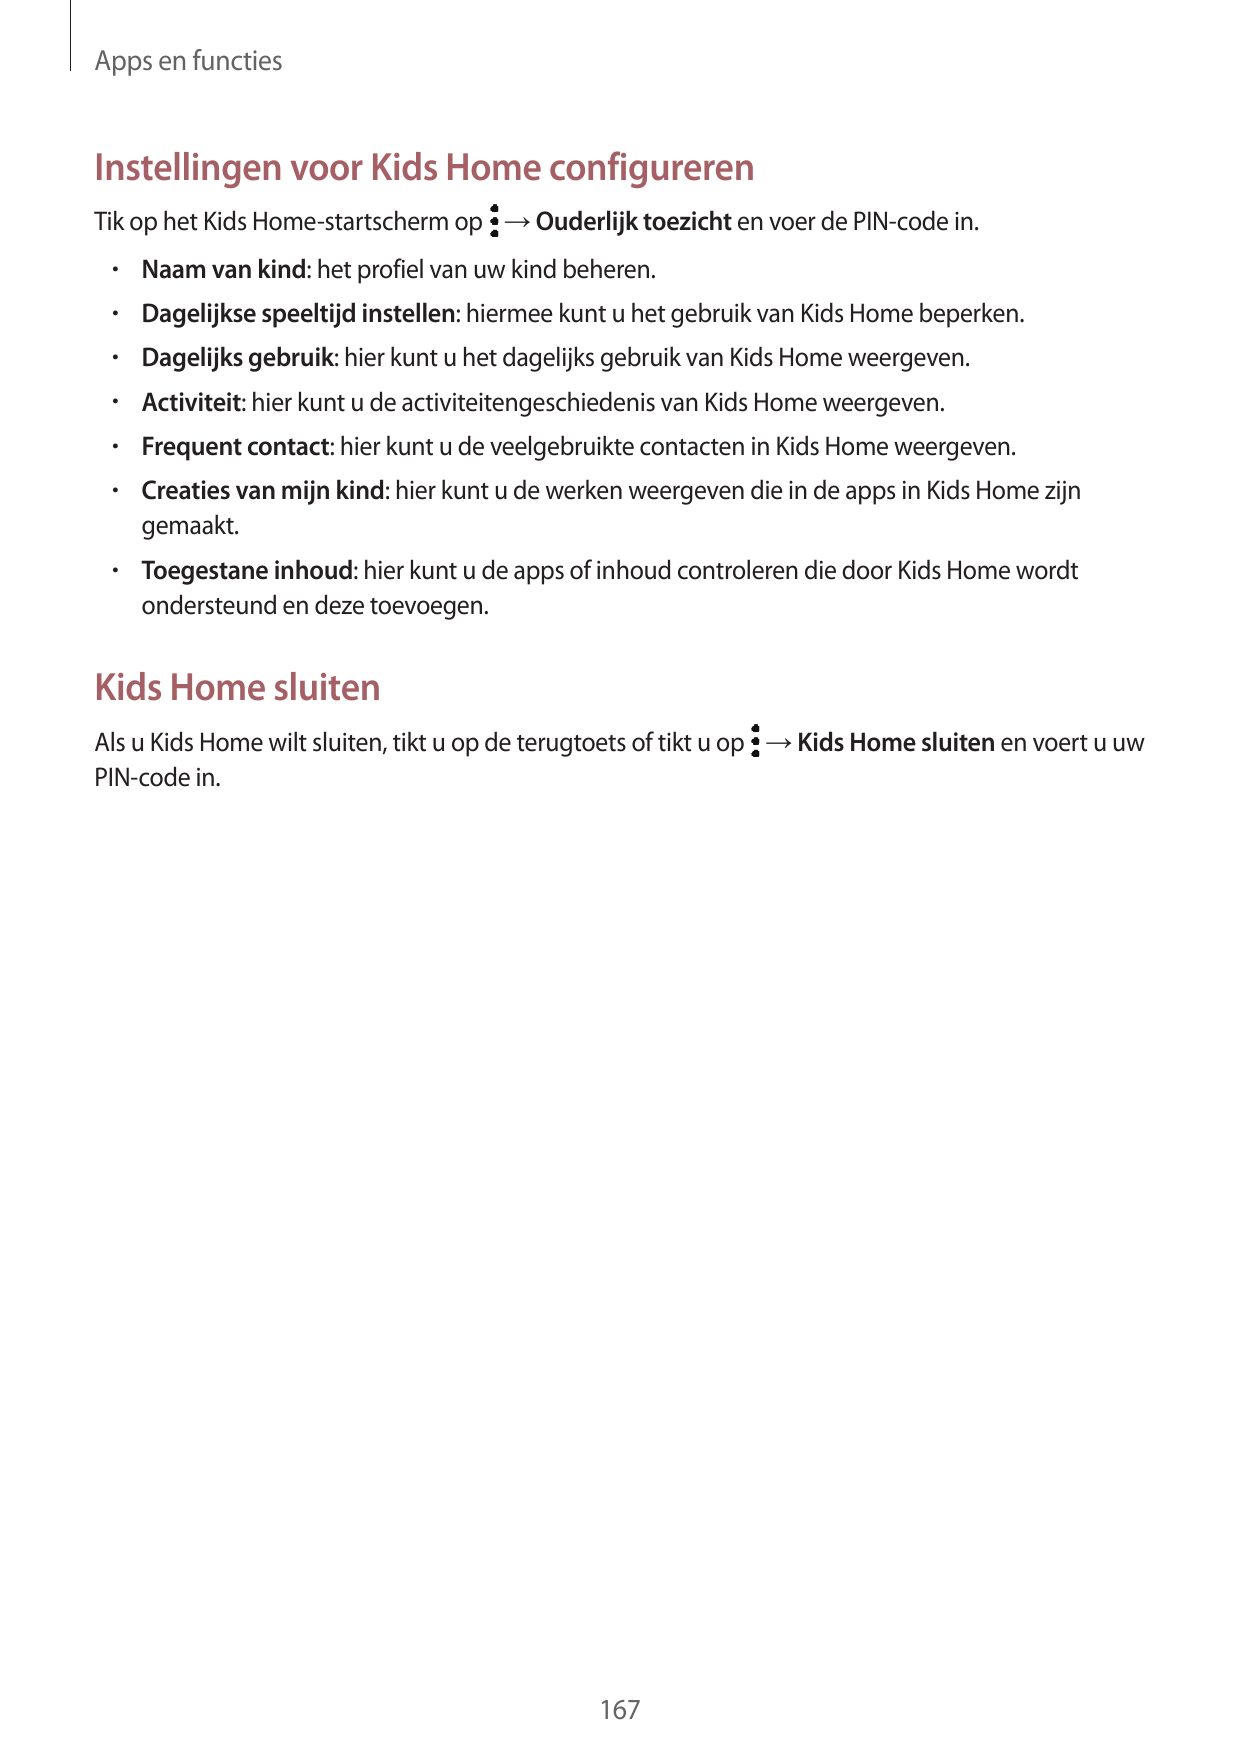 Apps en functiesInstellingen voor Kids Home configurerenTik op het Kids Home-startscherm op → Ouderlijk toezicht en voer de PIN-